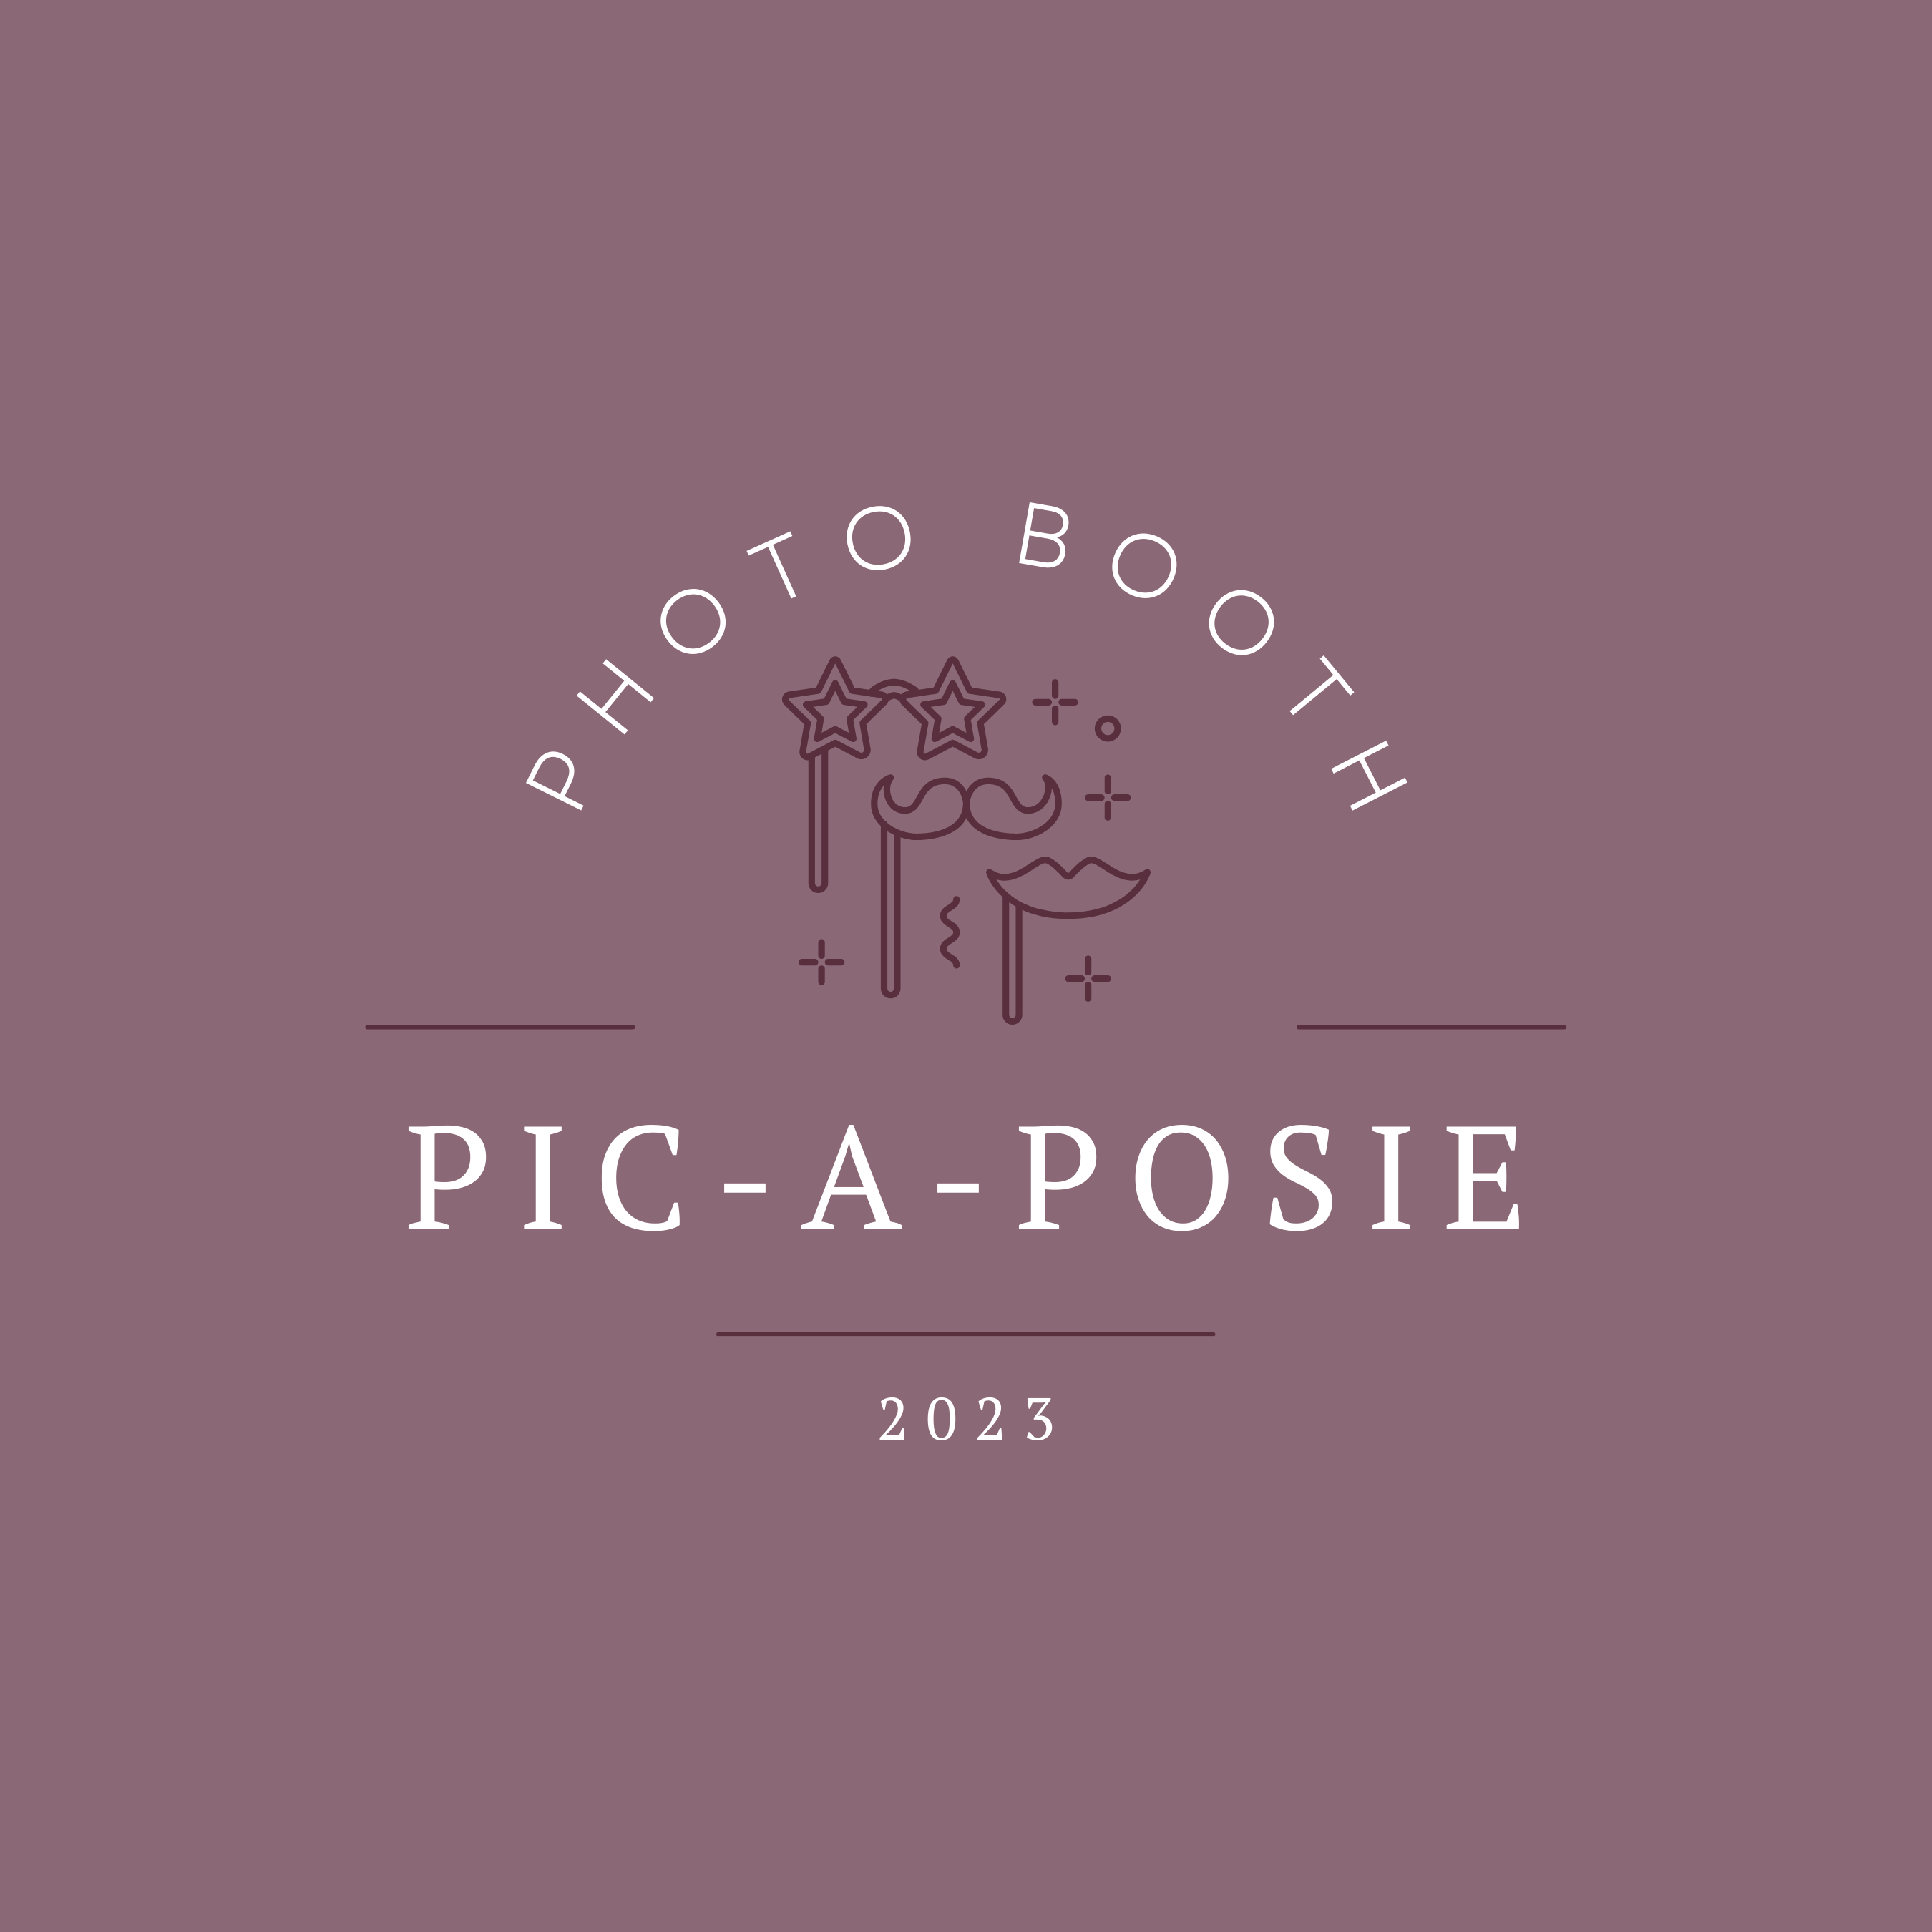 Pic-A-Posie Logo